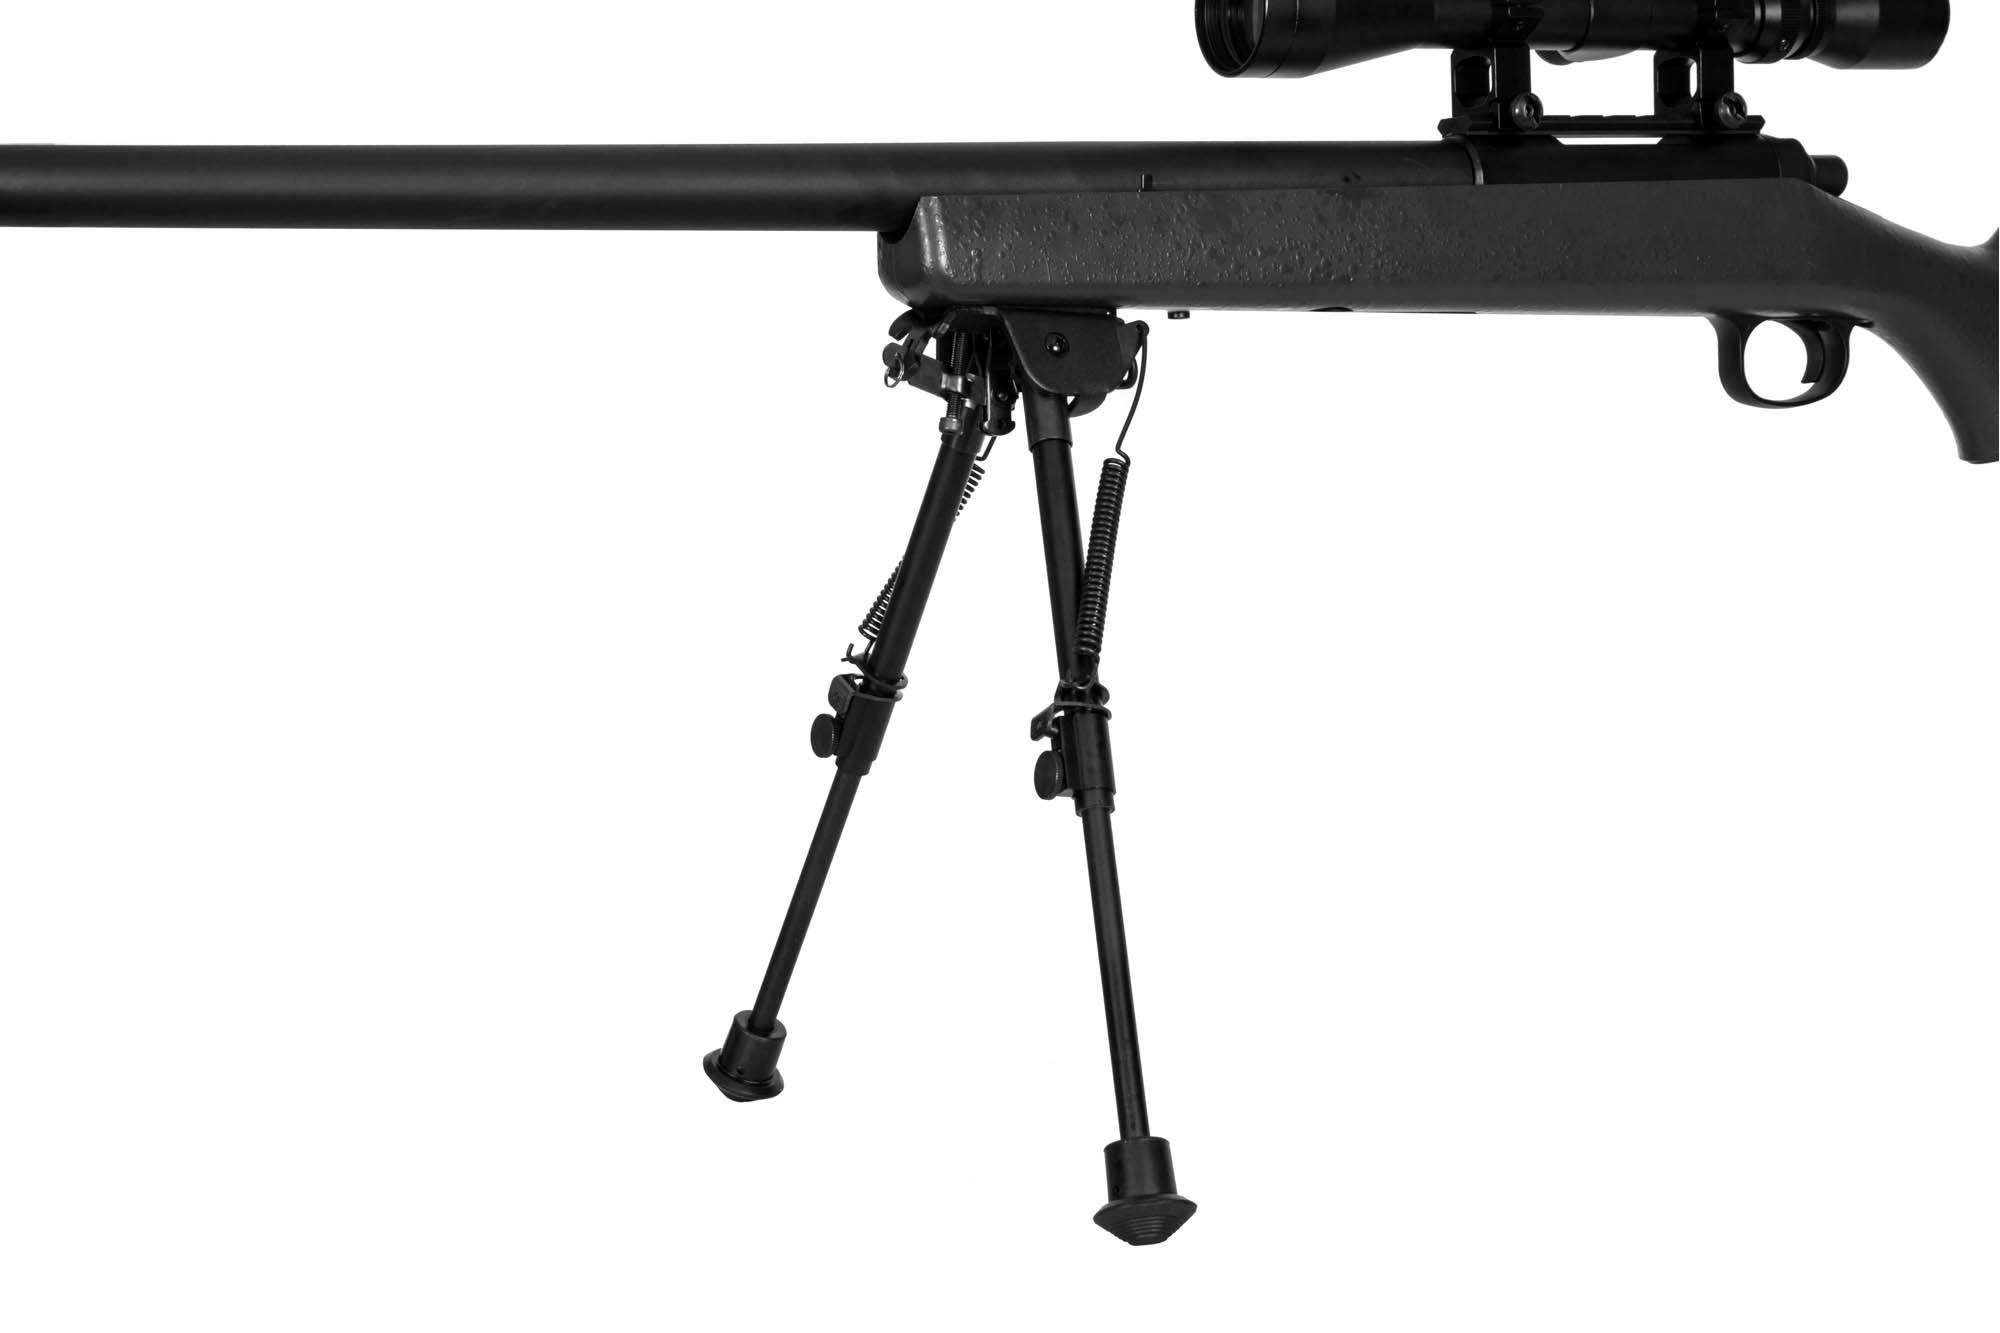 VSR-10 : Lunette de visée et bipied MB03D pour sniper airsoft, noir 